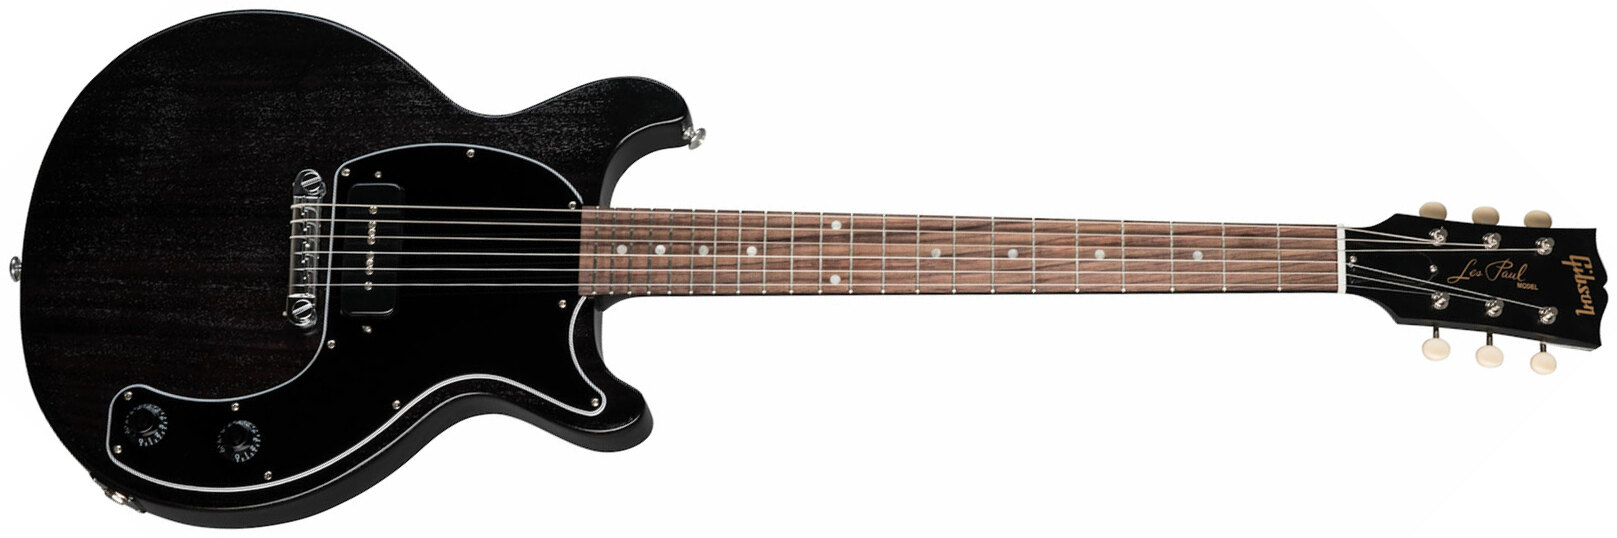 Gibson Les Paul Junior Tribute Dc Modern P90 - Worn Ebony - Guitarra eléctrica de doble corte. - Main picture